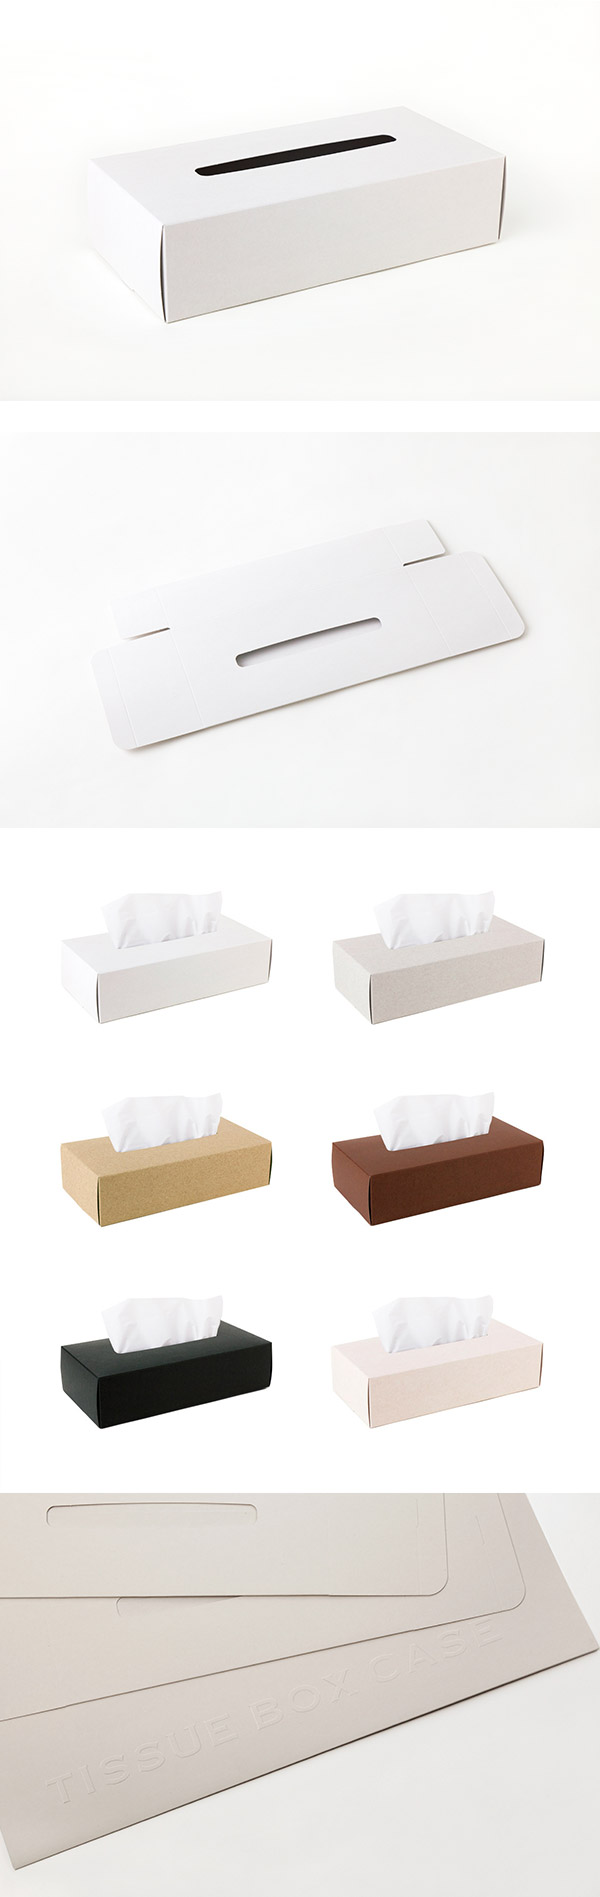 【5/7~5/13精選品牌9折優惠】Perrocaliente TISSUE BOX CASE 面紙盒 2入 白色